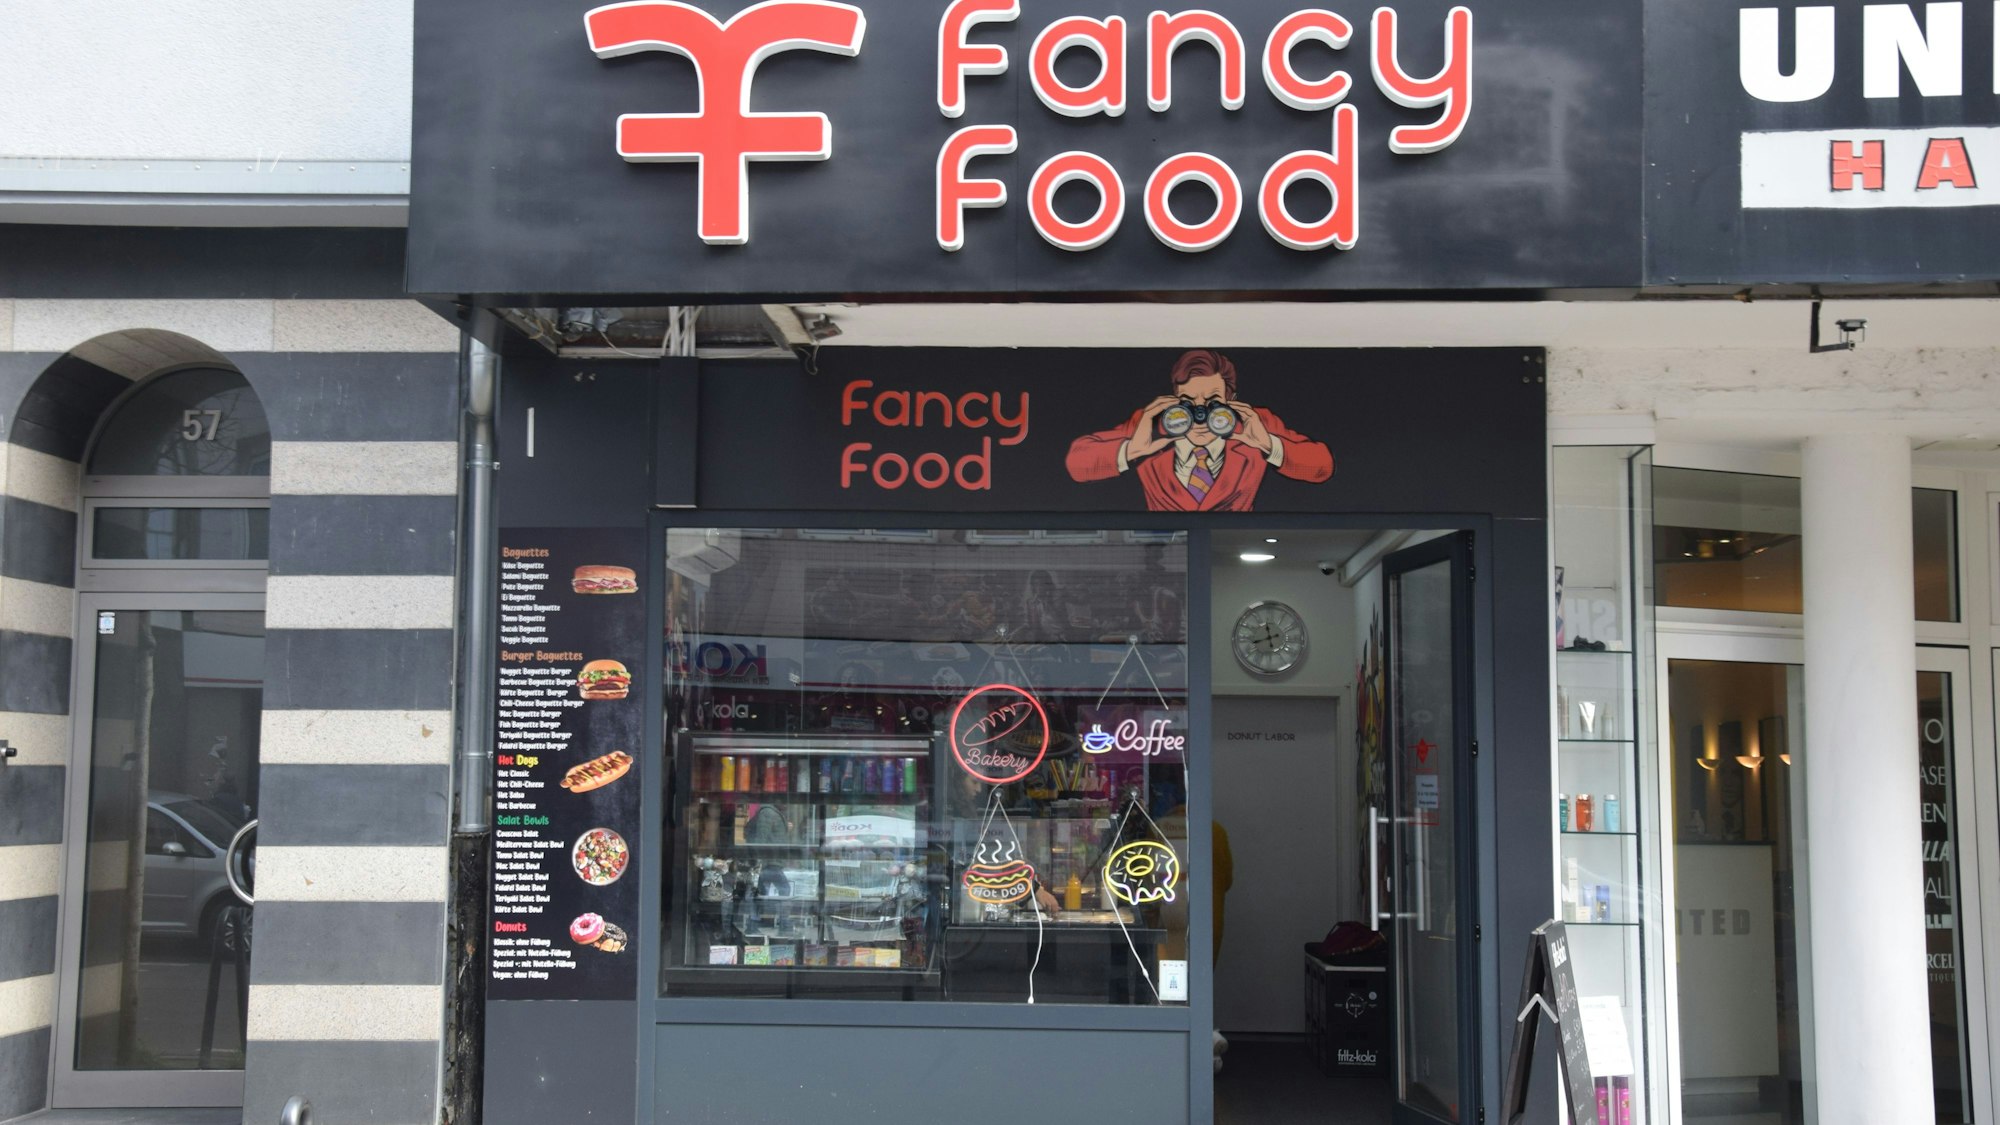 Die Front eines Fast-Food-Ladens mit dem Namen Fancy Food ist zu sehen.